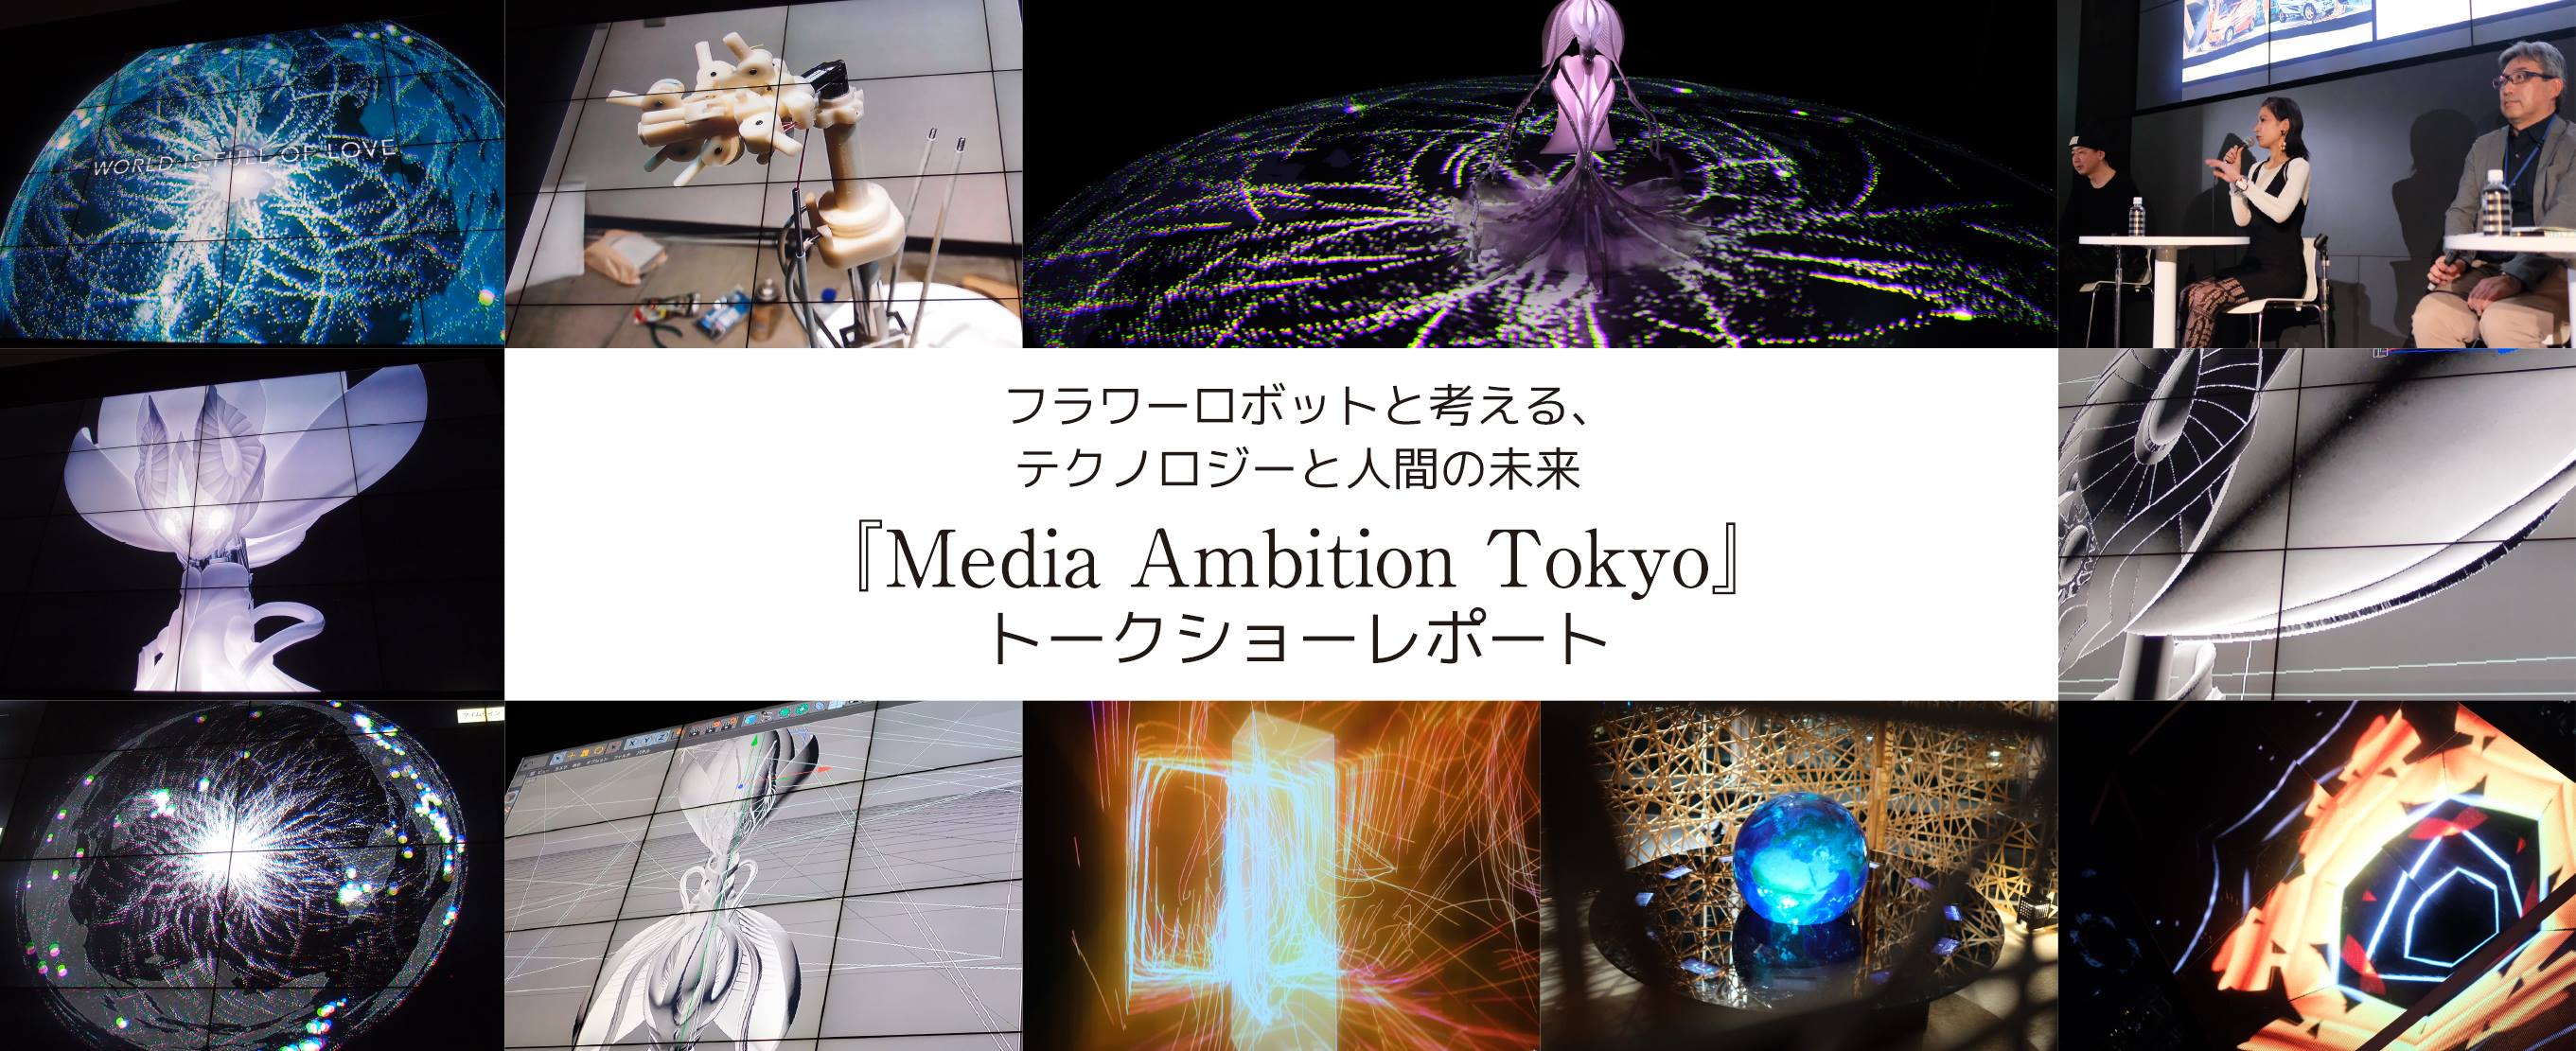 フラワーロボットと考える、テクノロジーと人間の未来『Media Ambition Tokyo』トーク